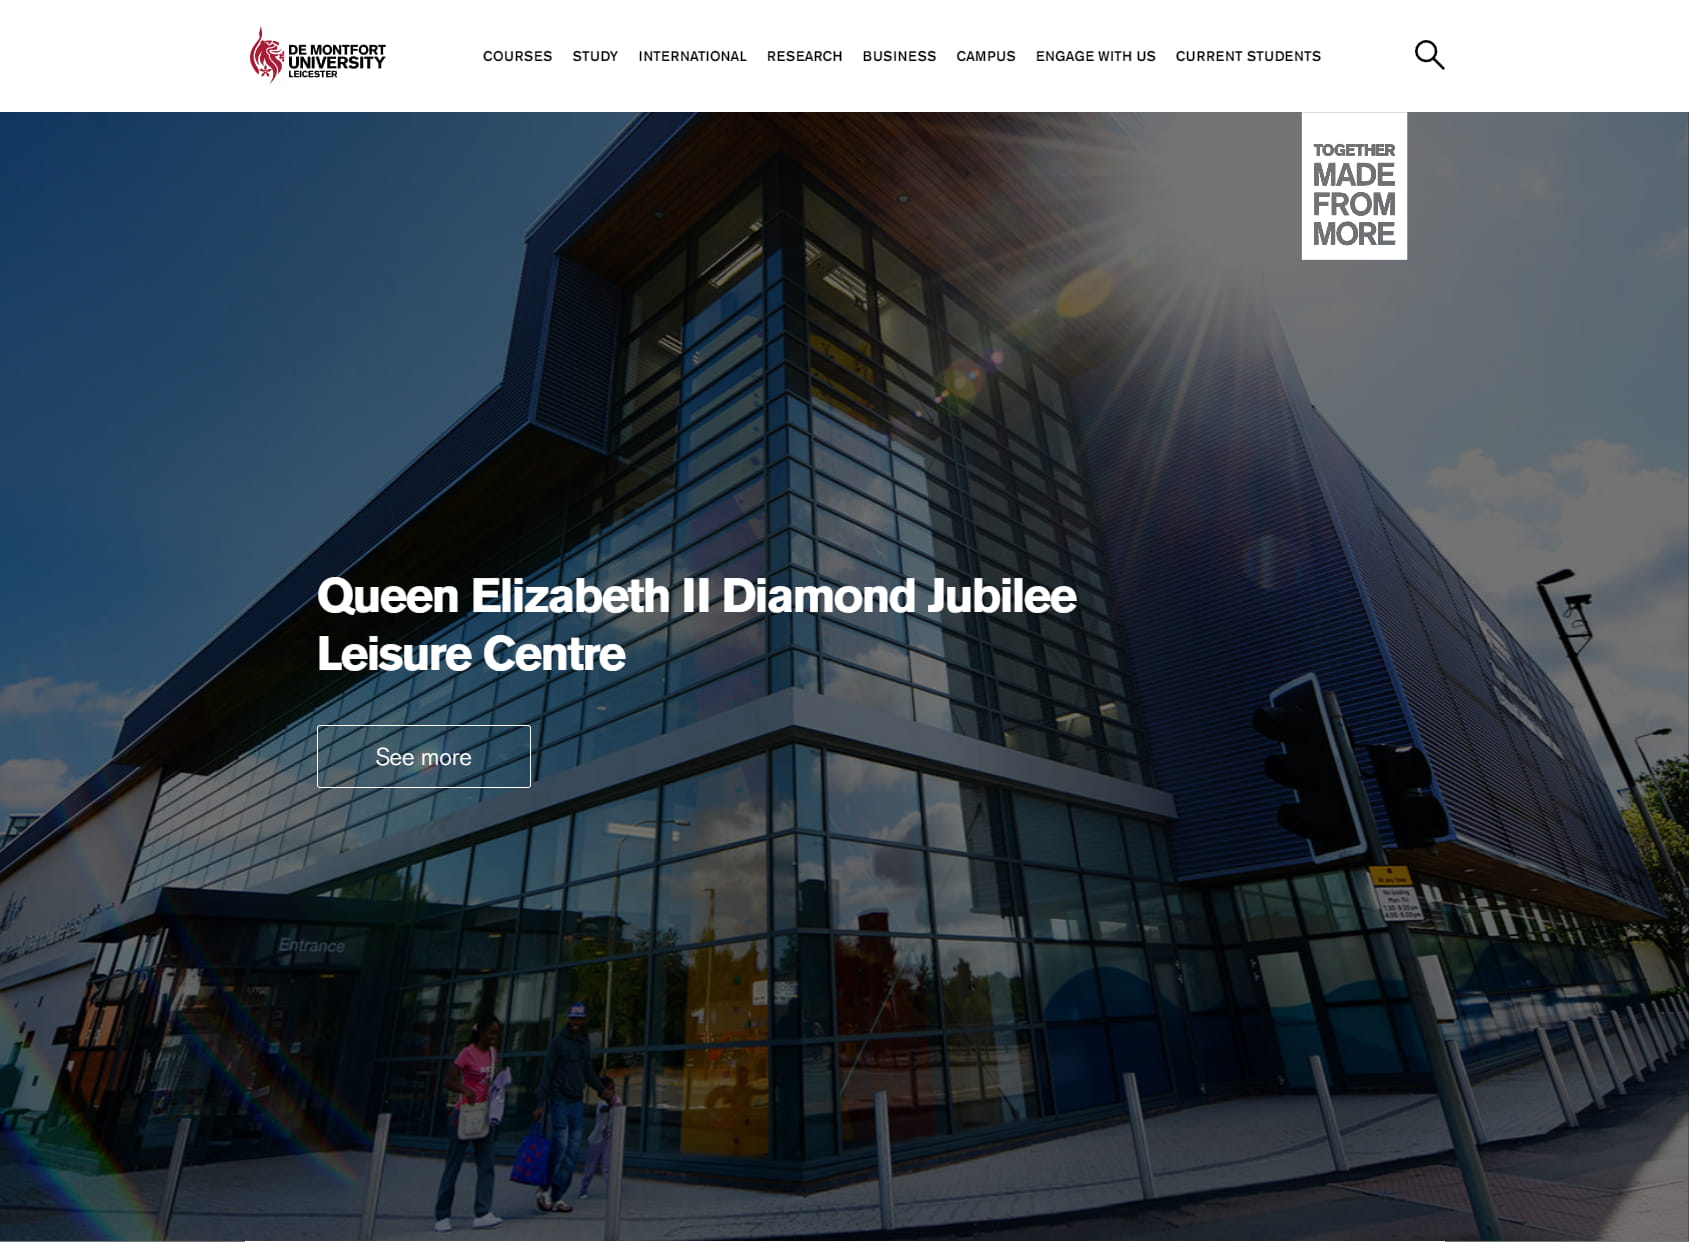 Queen Elizabeth II Diamond Jubilee Leisure Centre